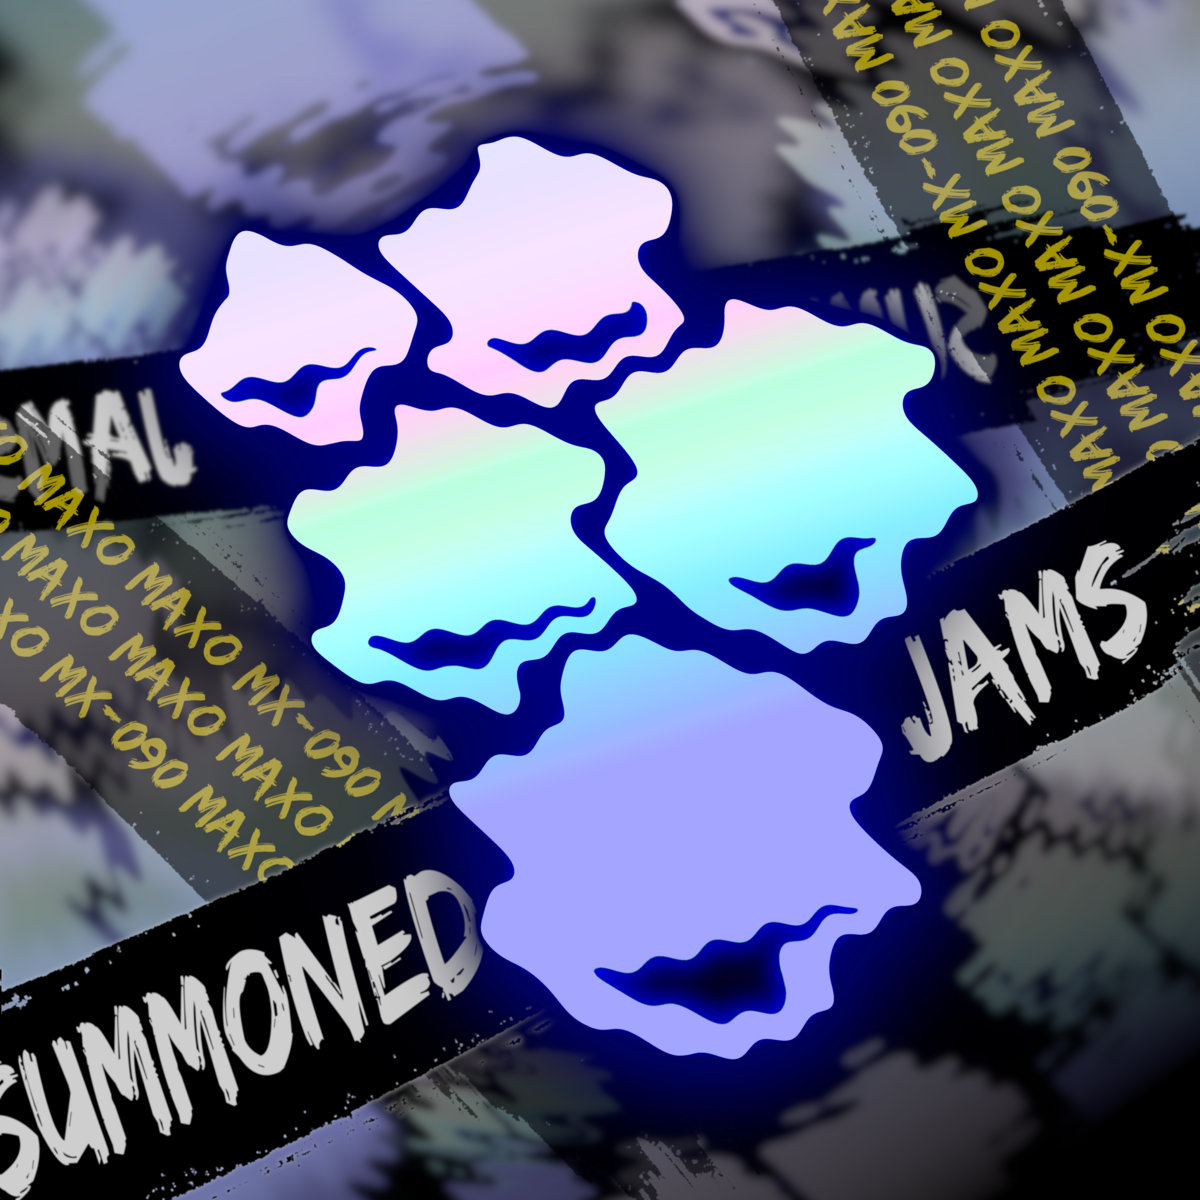 SUMMONED JAMS by Maxo